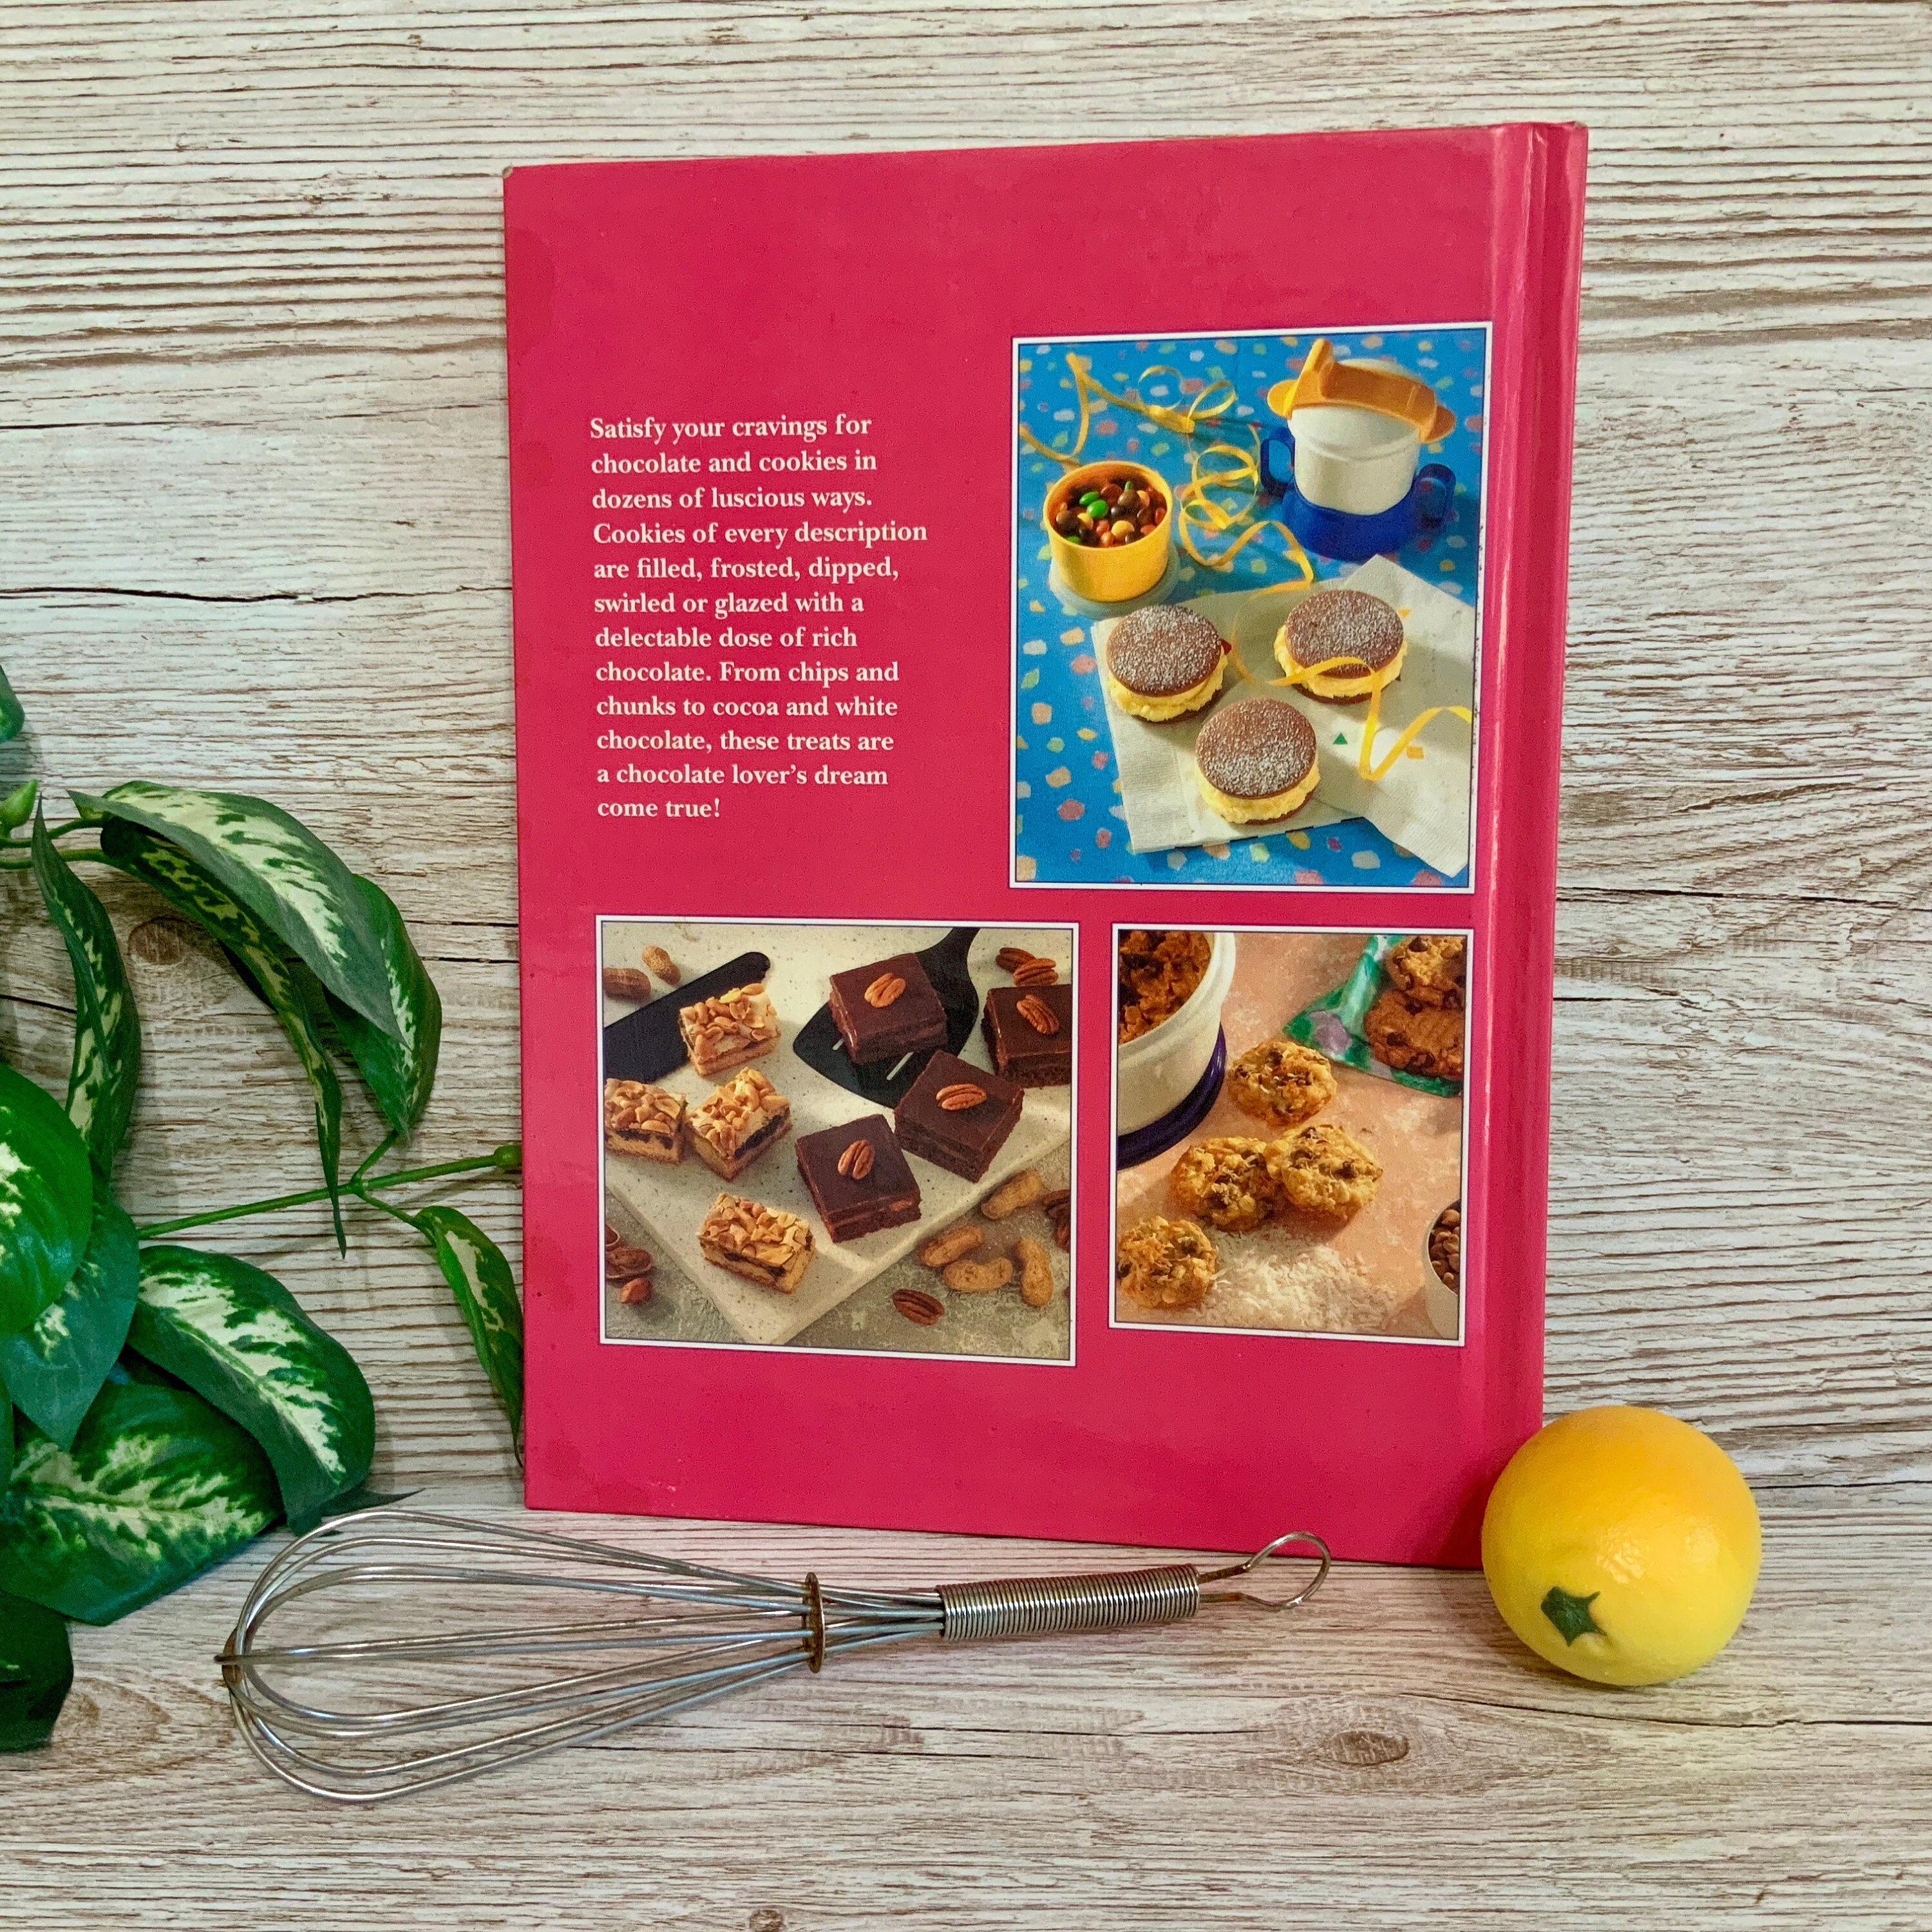 1993 Tupperware Chocolate Lovers Cookies Cookbook 